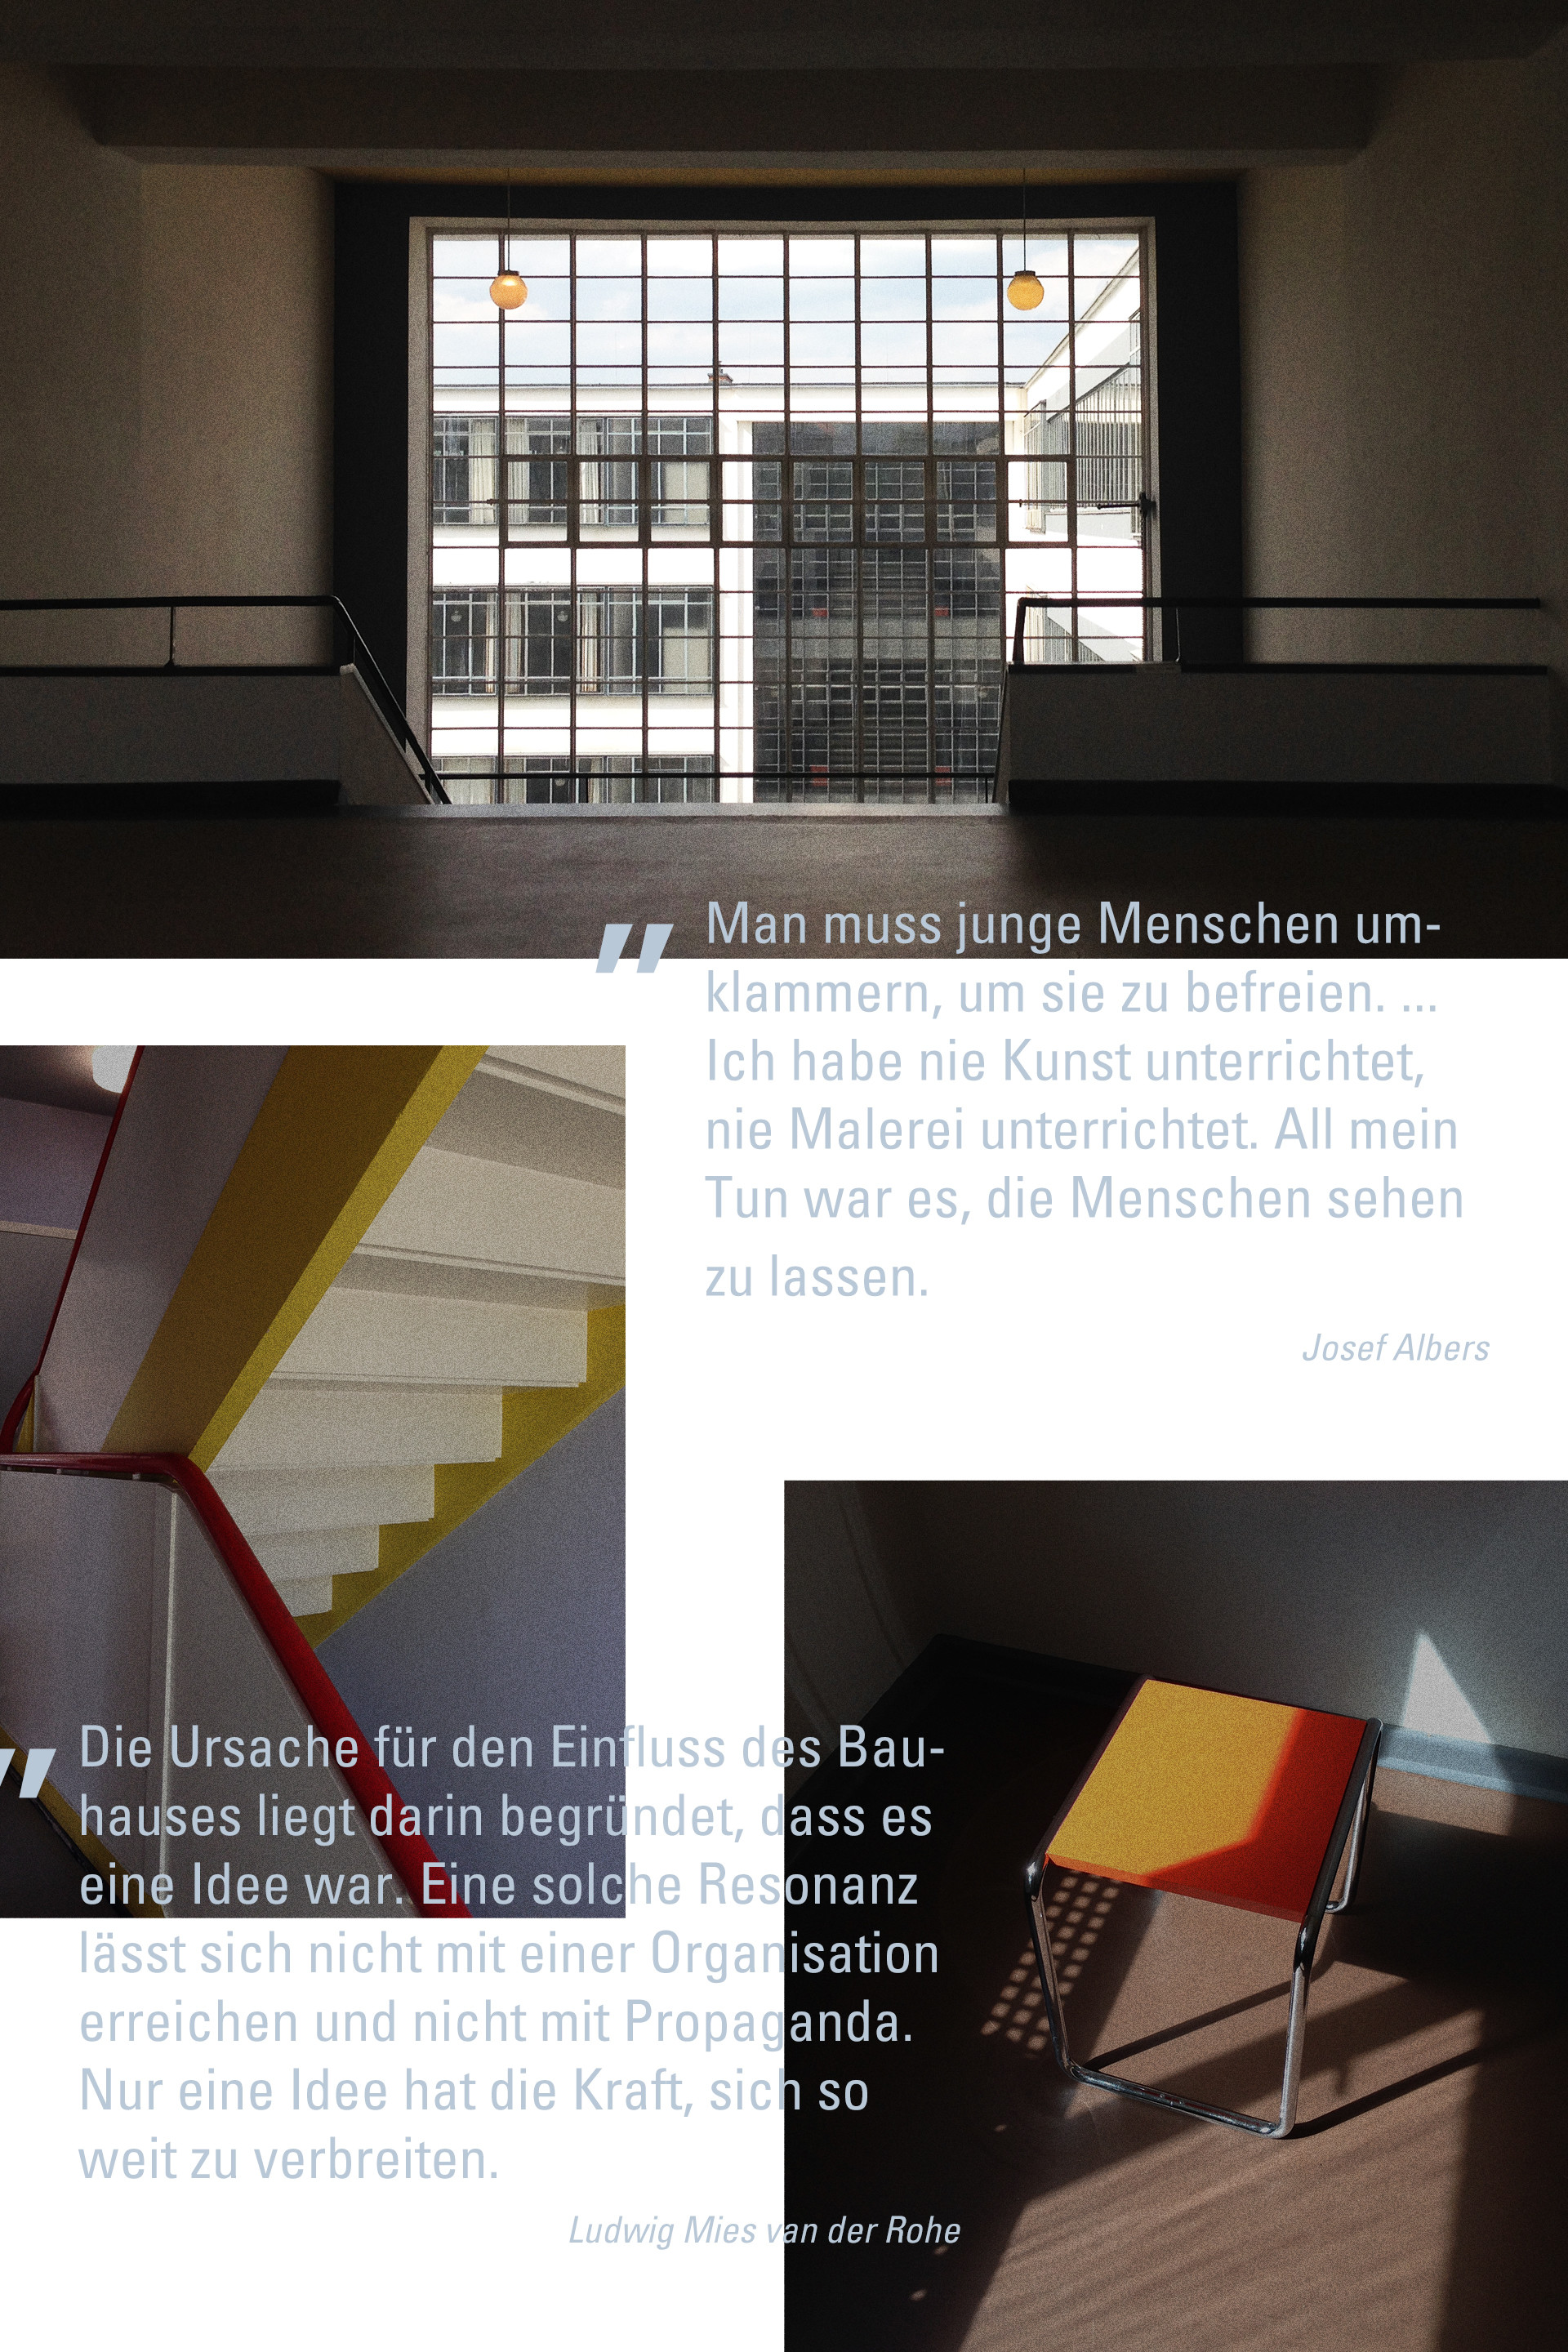 Bauhaus Zitate von Josef Albers und Ludwig Mies van der Rohe